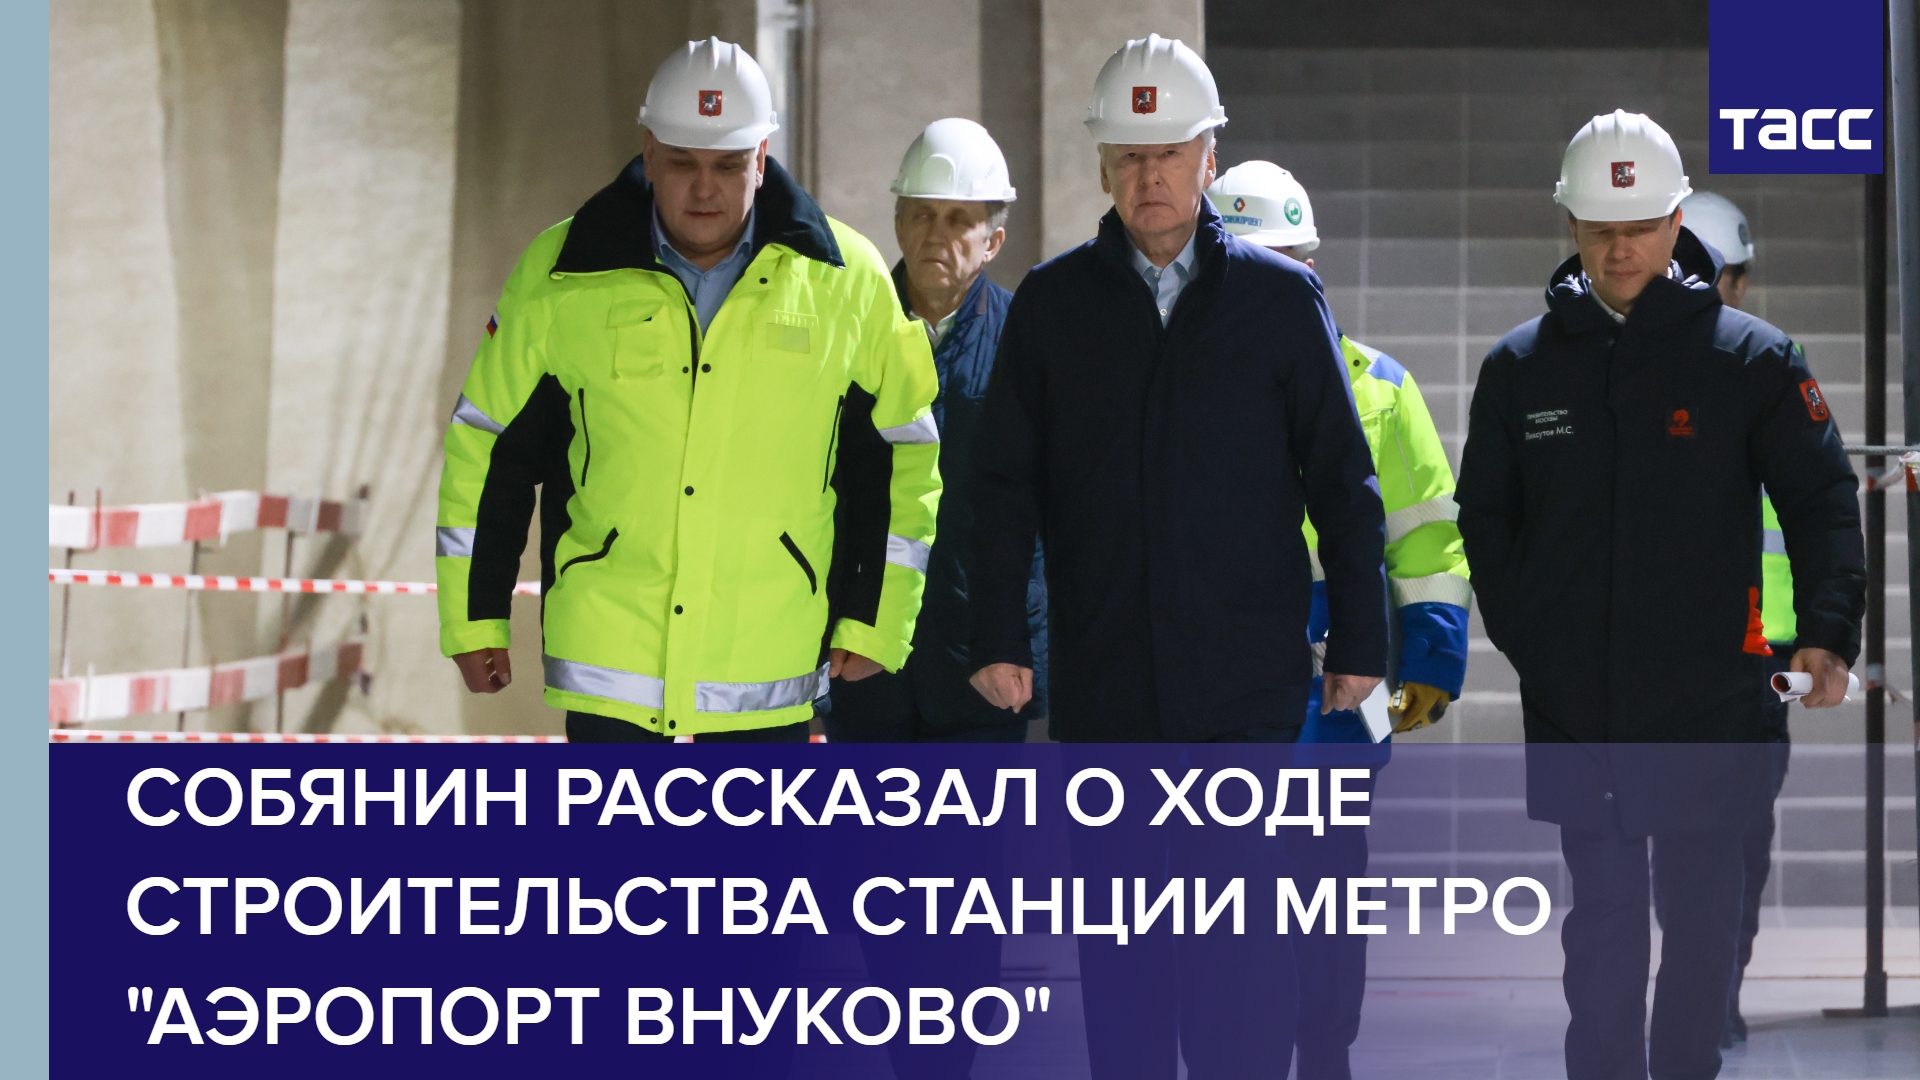 Собянин рассказал о ходе строительства станции метро "Аэропорт Внуково" #shorts